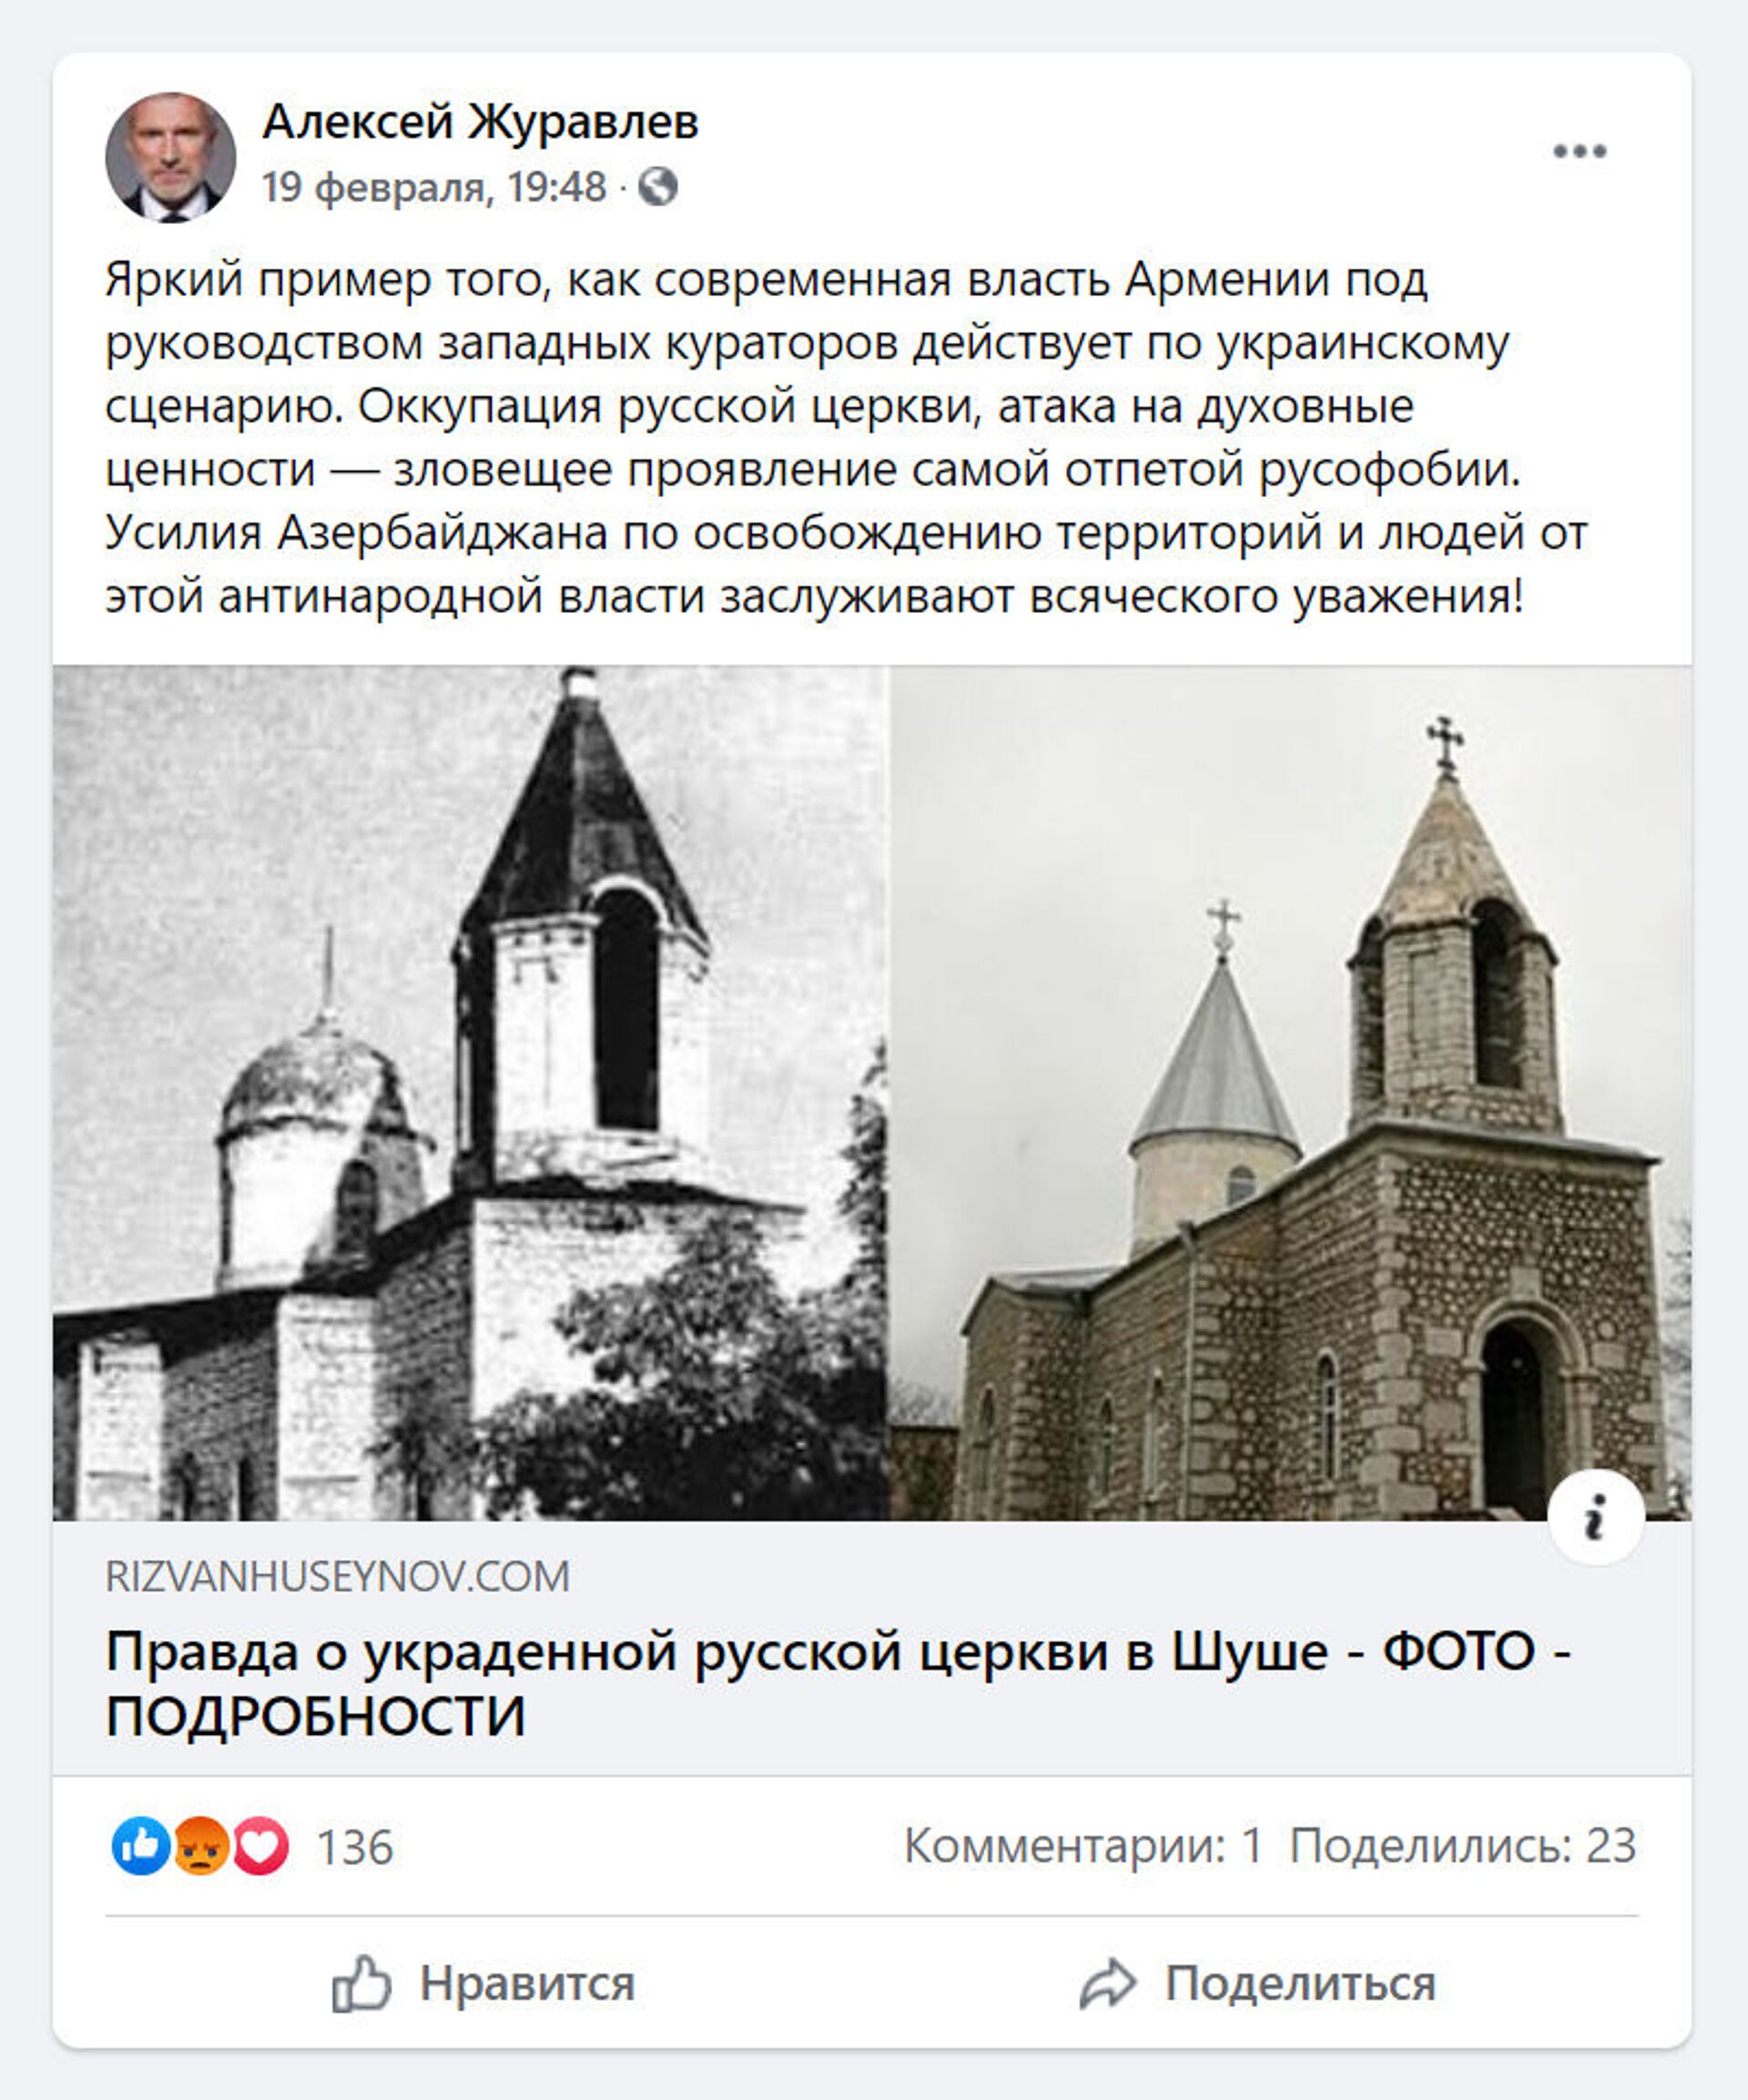 Ուղղափառ եկեղեցի Շուշիում. որտեղի՞ց է ծագել հայերի կողմից եկեղեցու յուրացման մասին միֆը - Sputnik Արմենիա, 1920, 26.02.2021